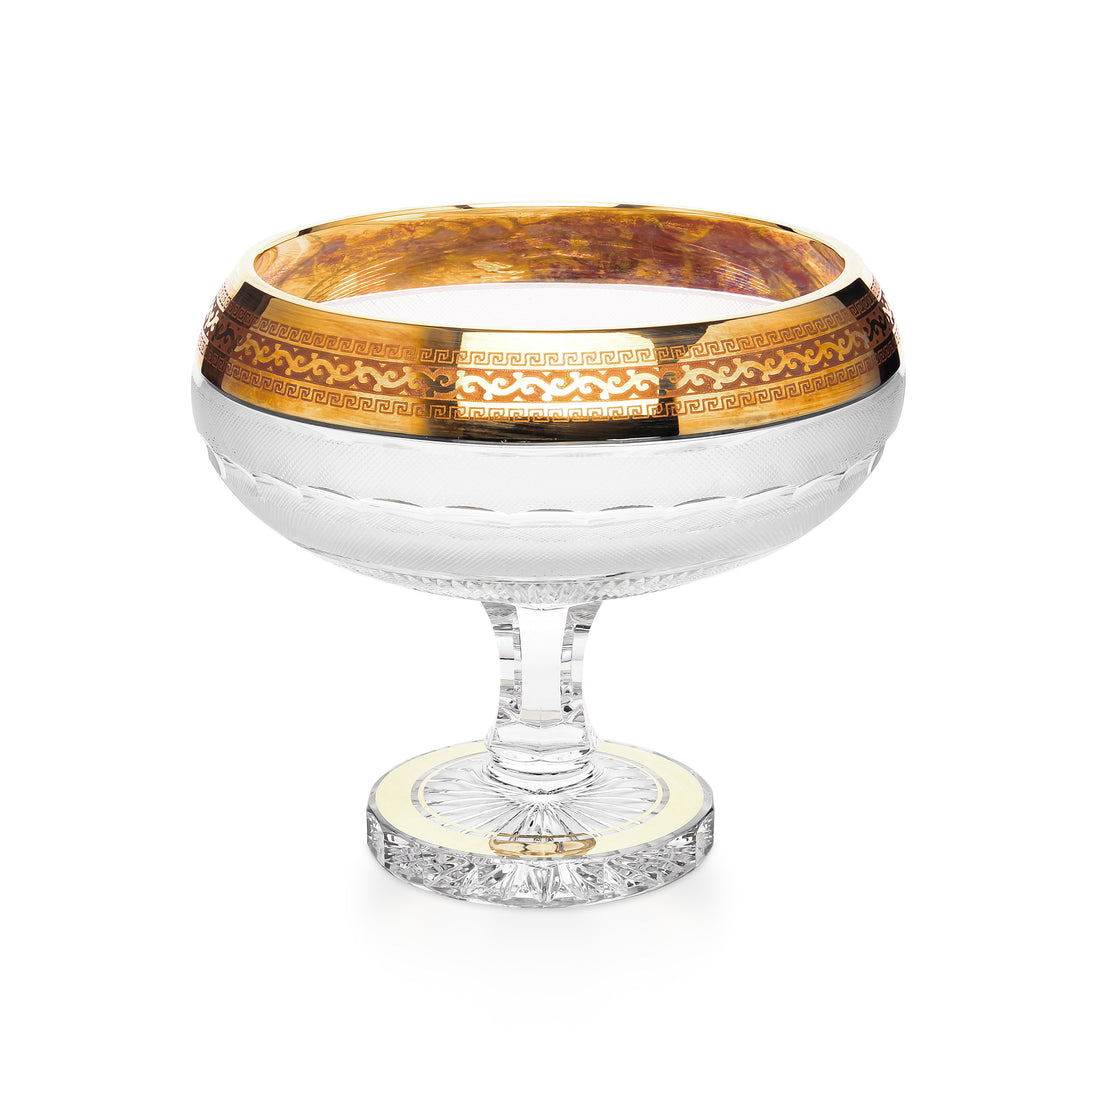 BOHEMIA "Crystal Gold" Fine Cut Crystal Pedestal Bowl